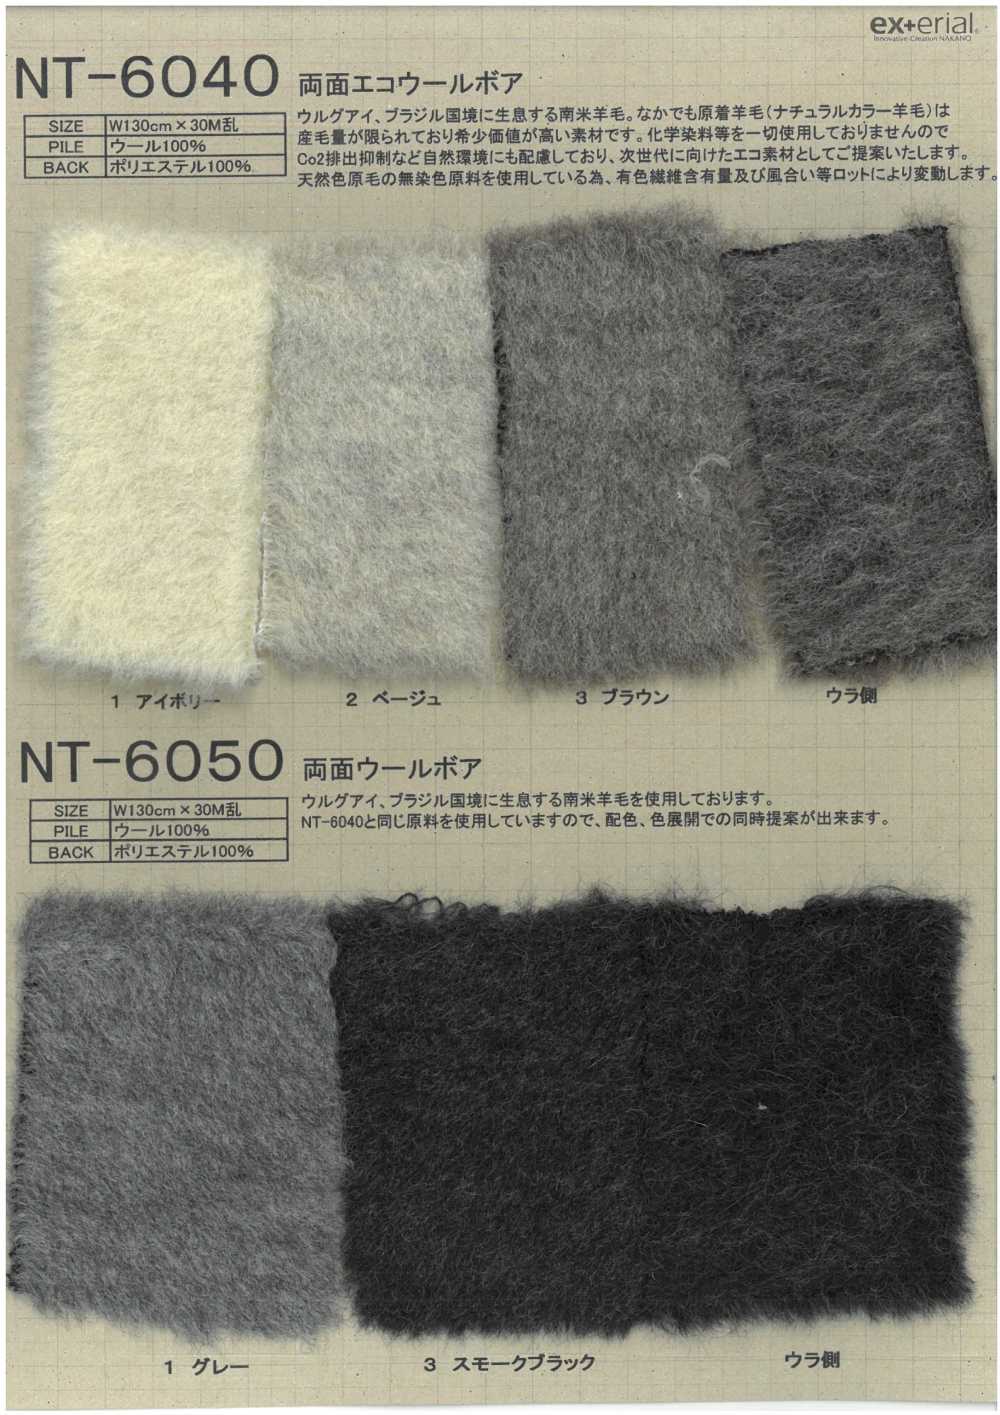 NT-6040 Pele Artesanal [Boa De Lã Ecológica Dupla Face][Têxtil / Tecido] Indústria De Meias Nakano